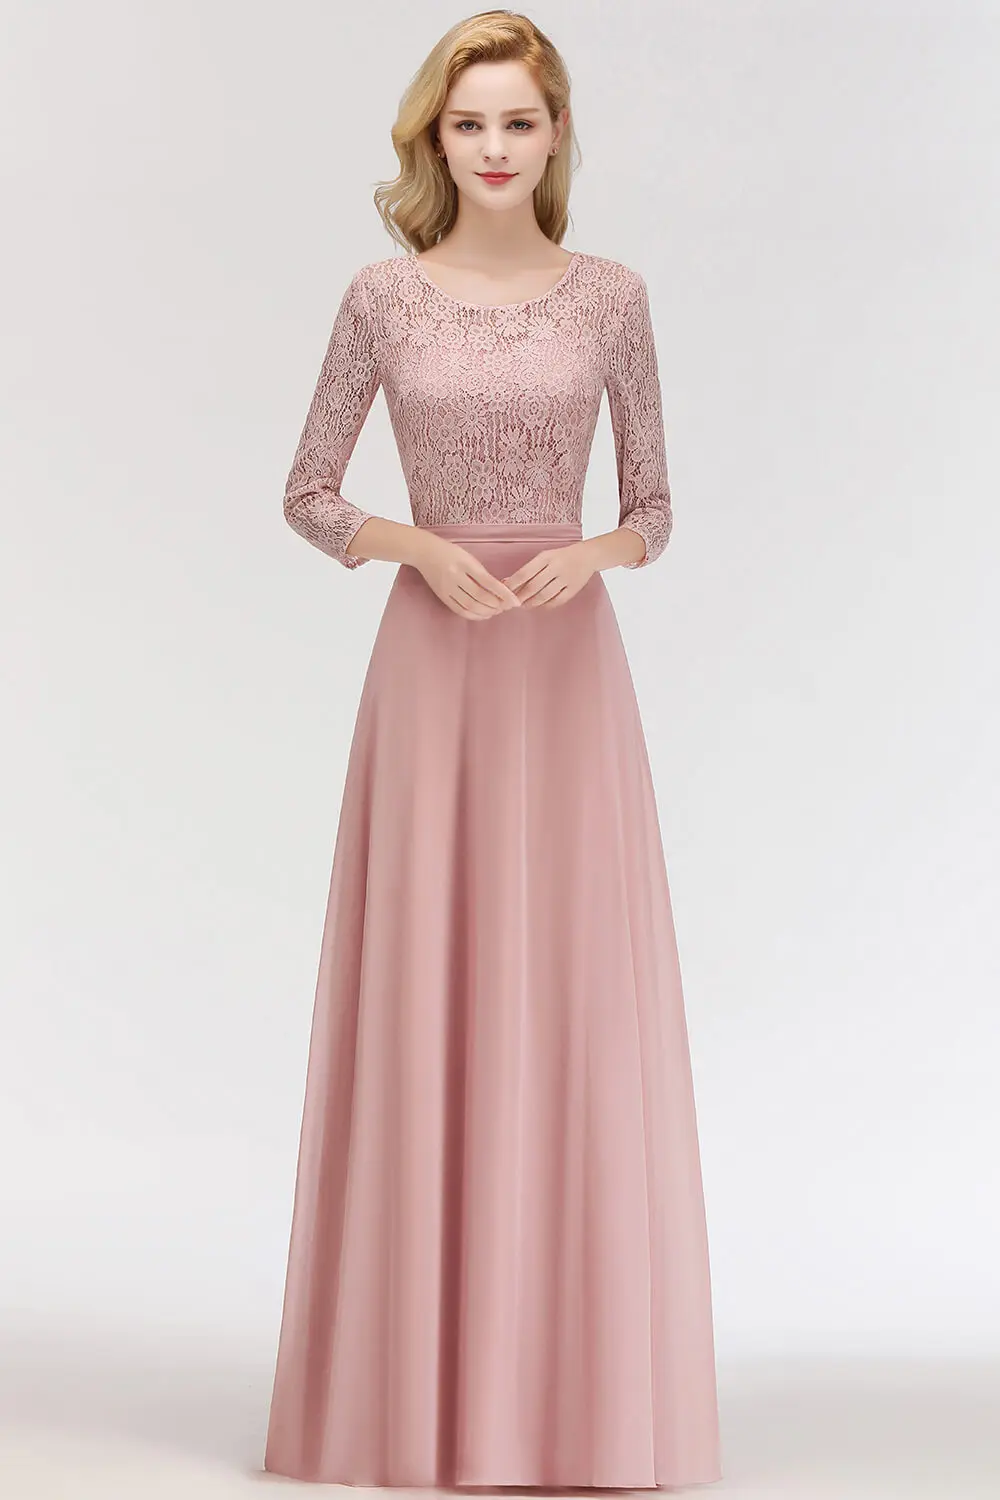 Popodion вечерние платья, длинное шифоновое формальное платье с длинным рукавом, вечернее платье ROM80180